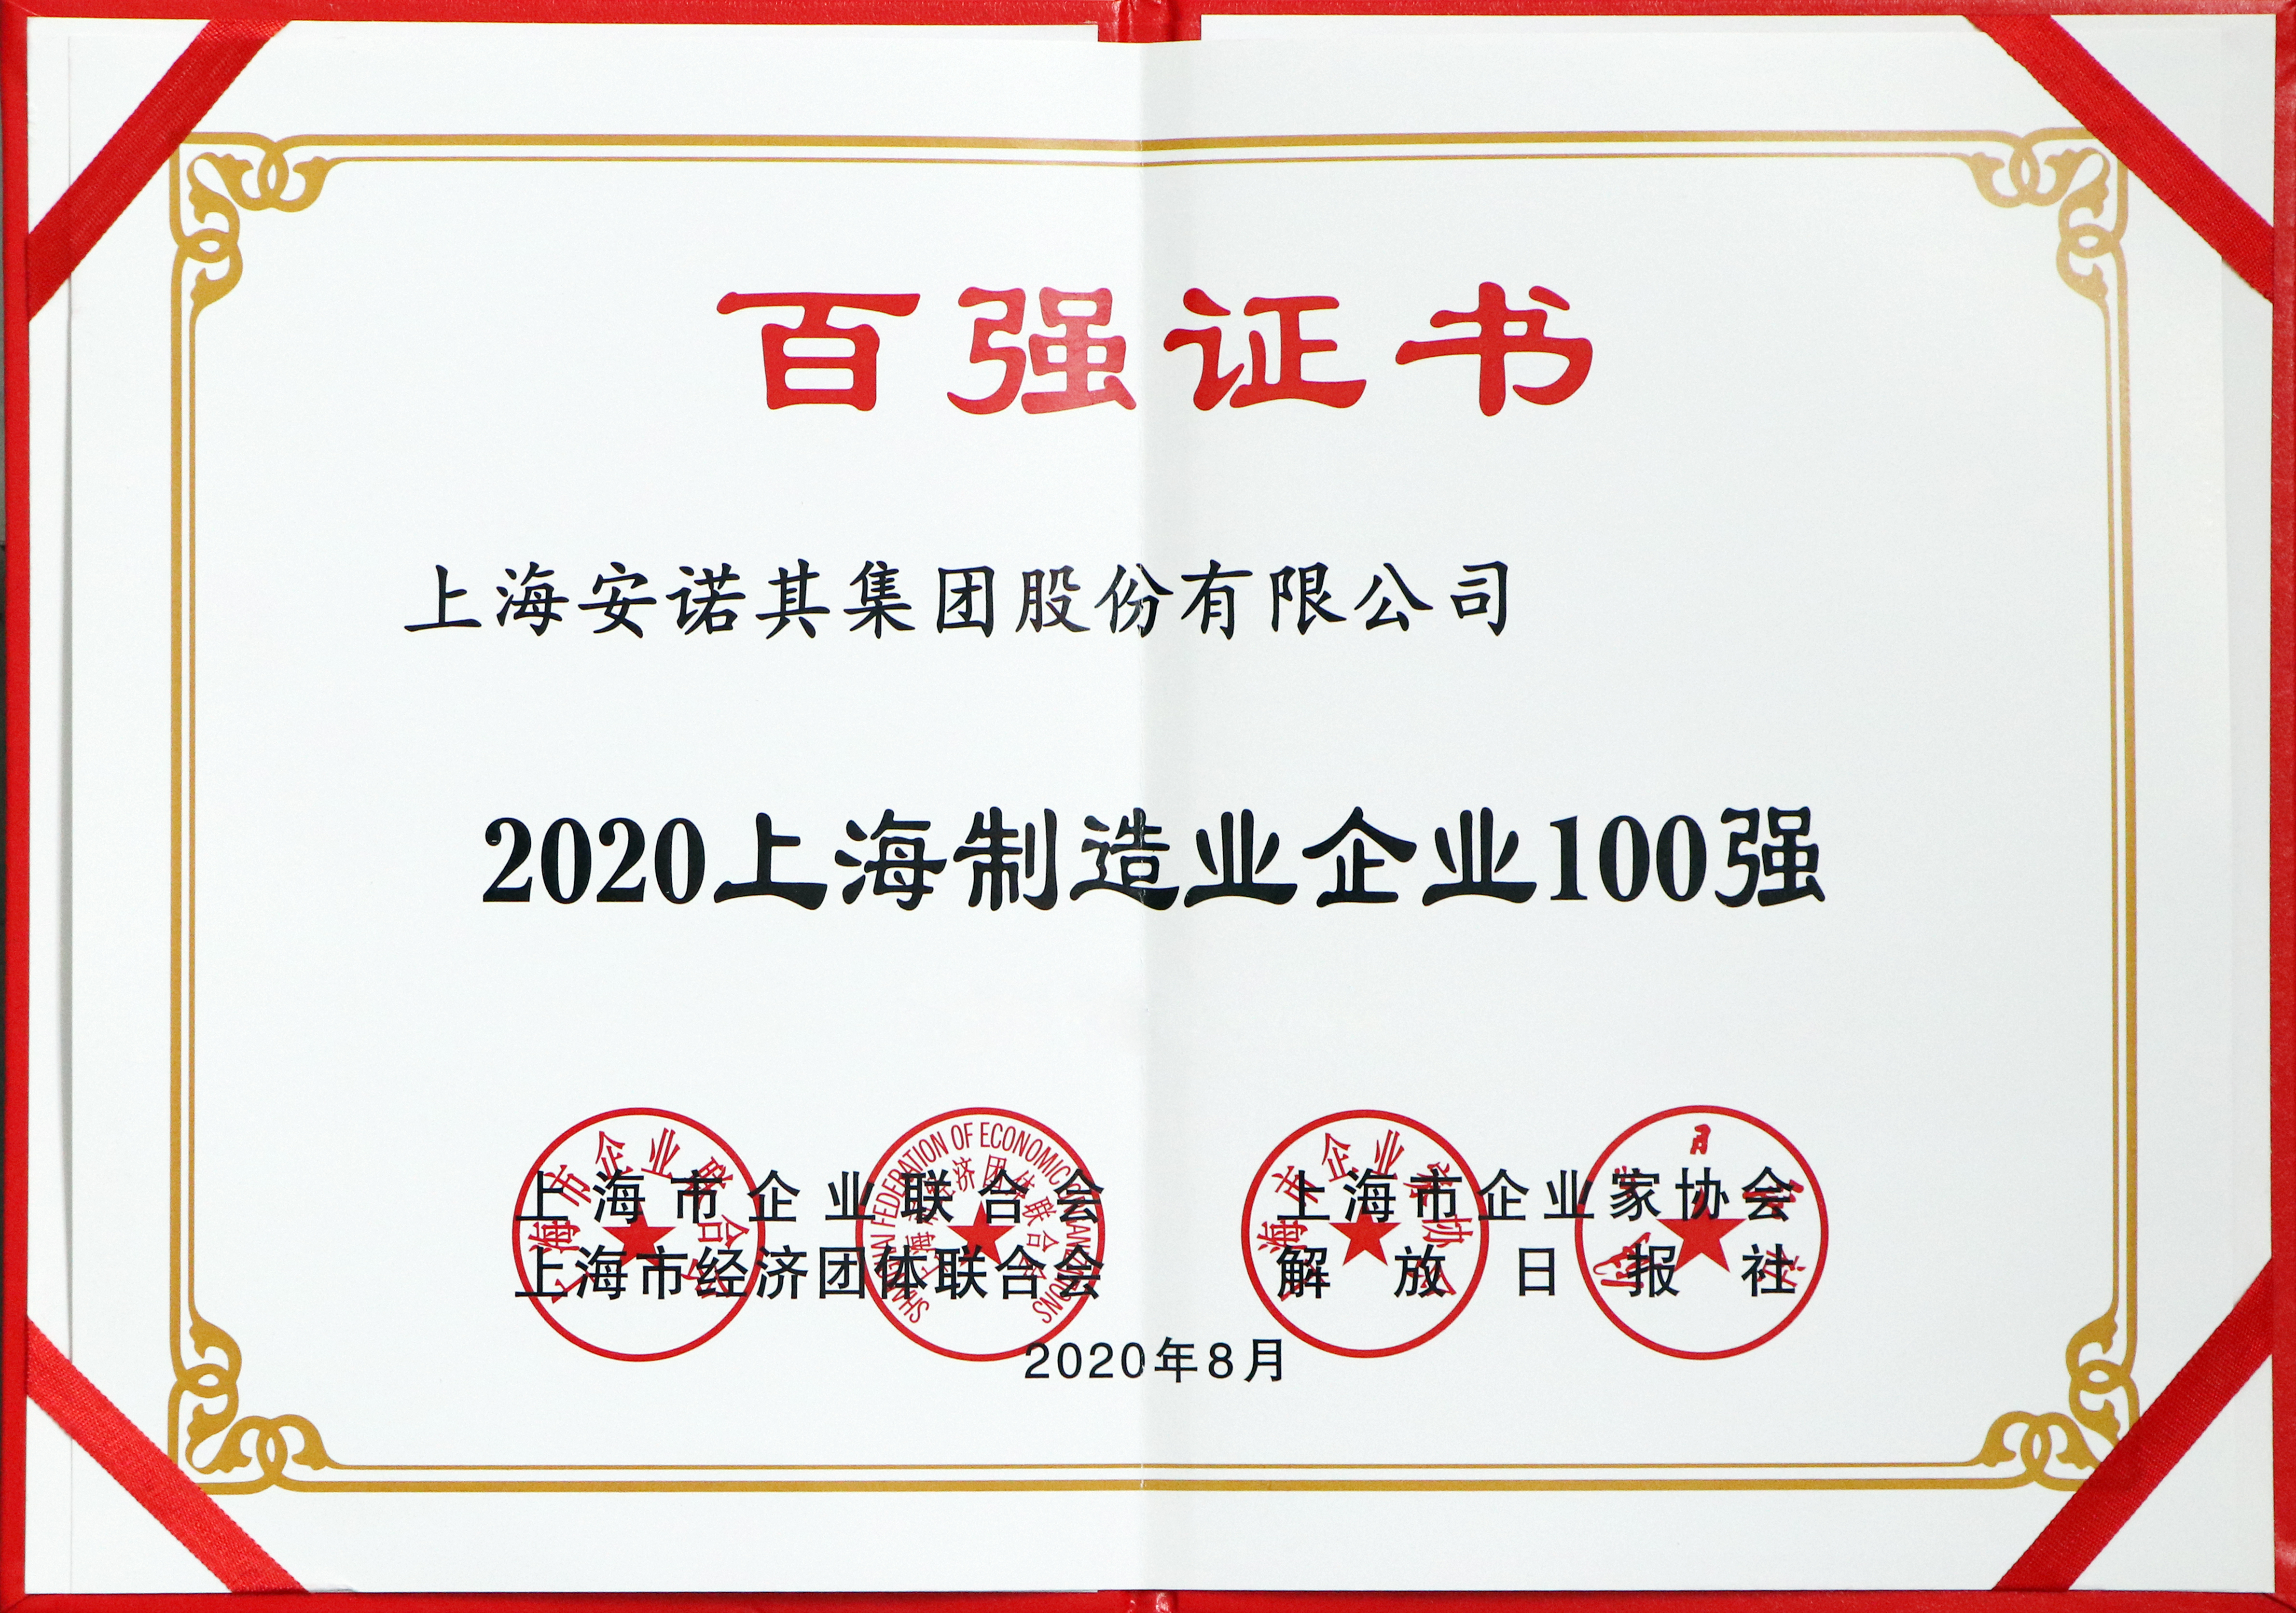 2020年获上海制造业100强